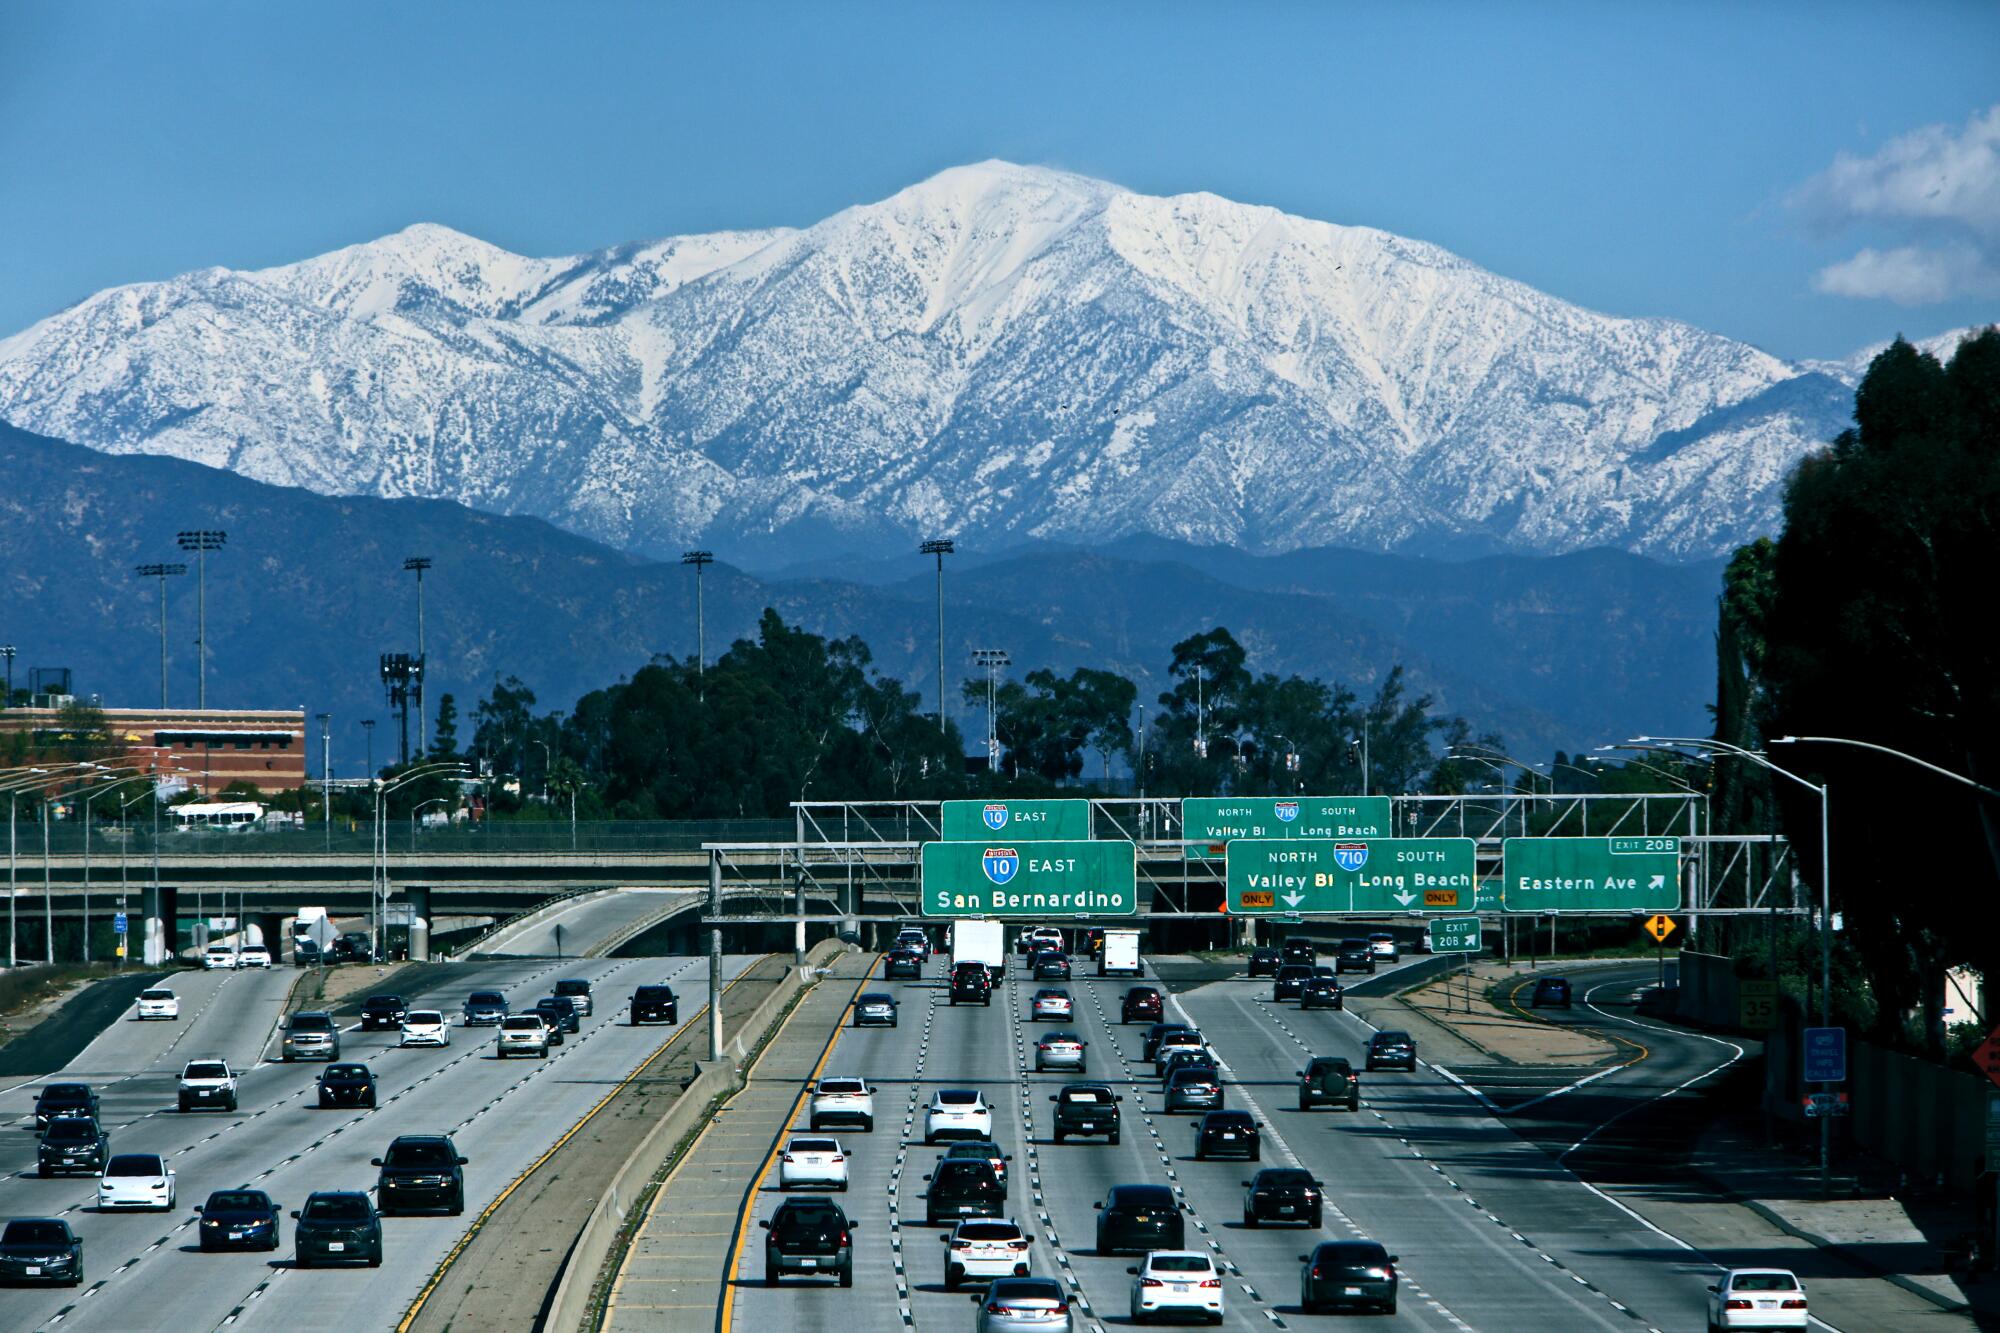 Mt. Baldy rises above the freeway.